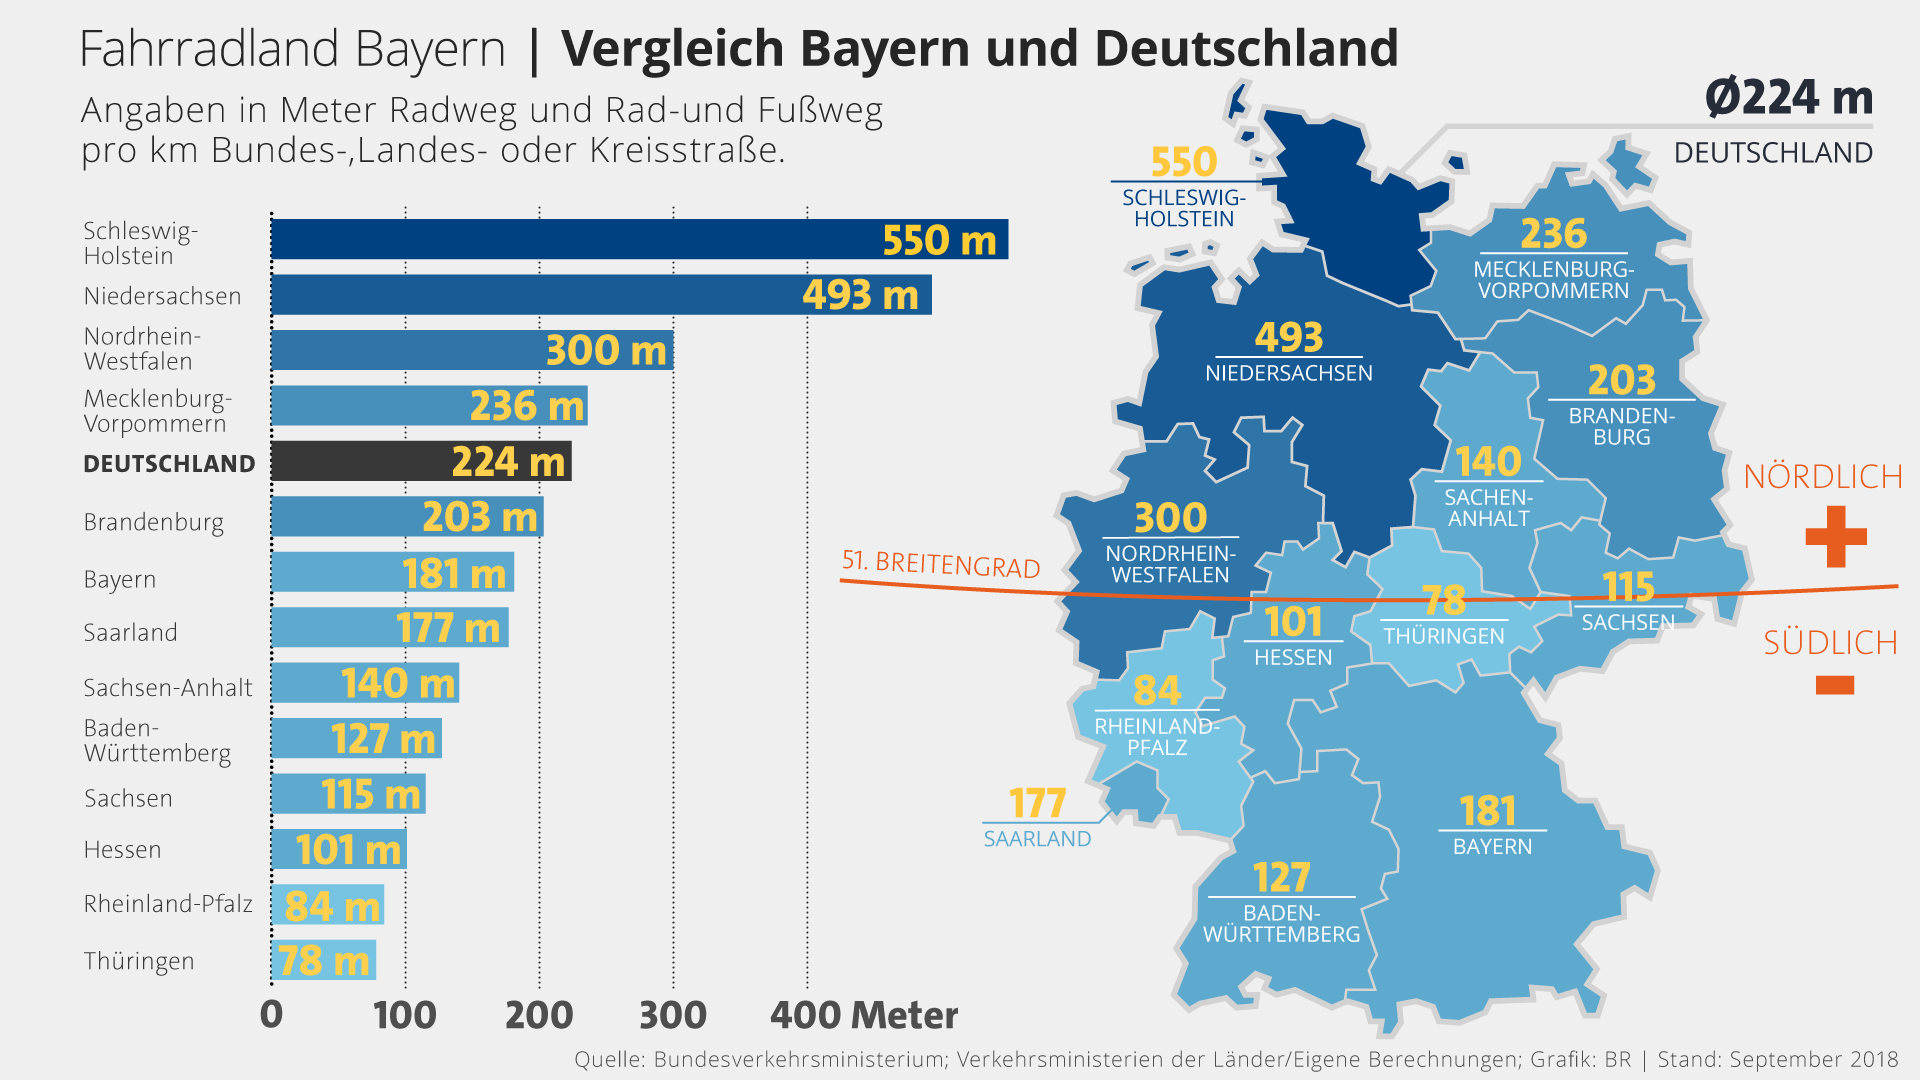 Infografik: Der Süden Deutschlands hinkt beim Radwegenetz hinterher | Bild: BR